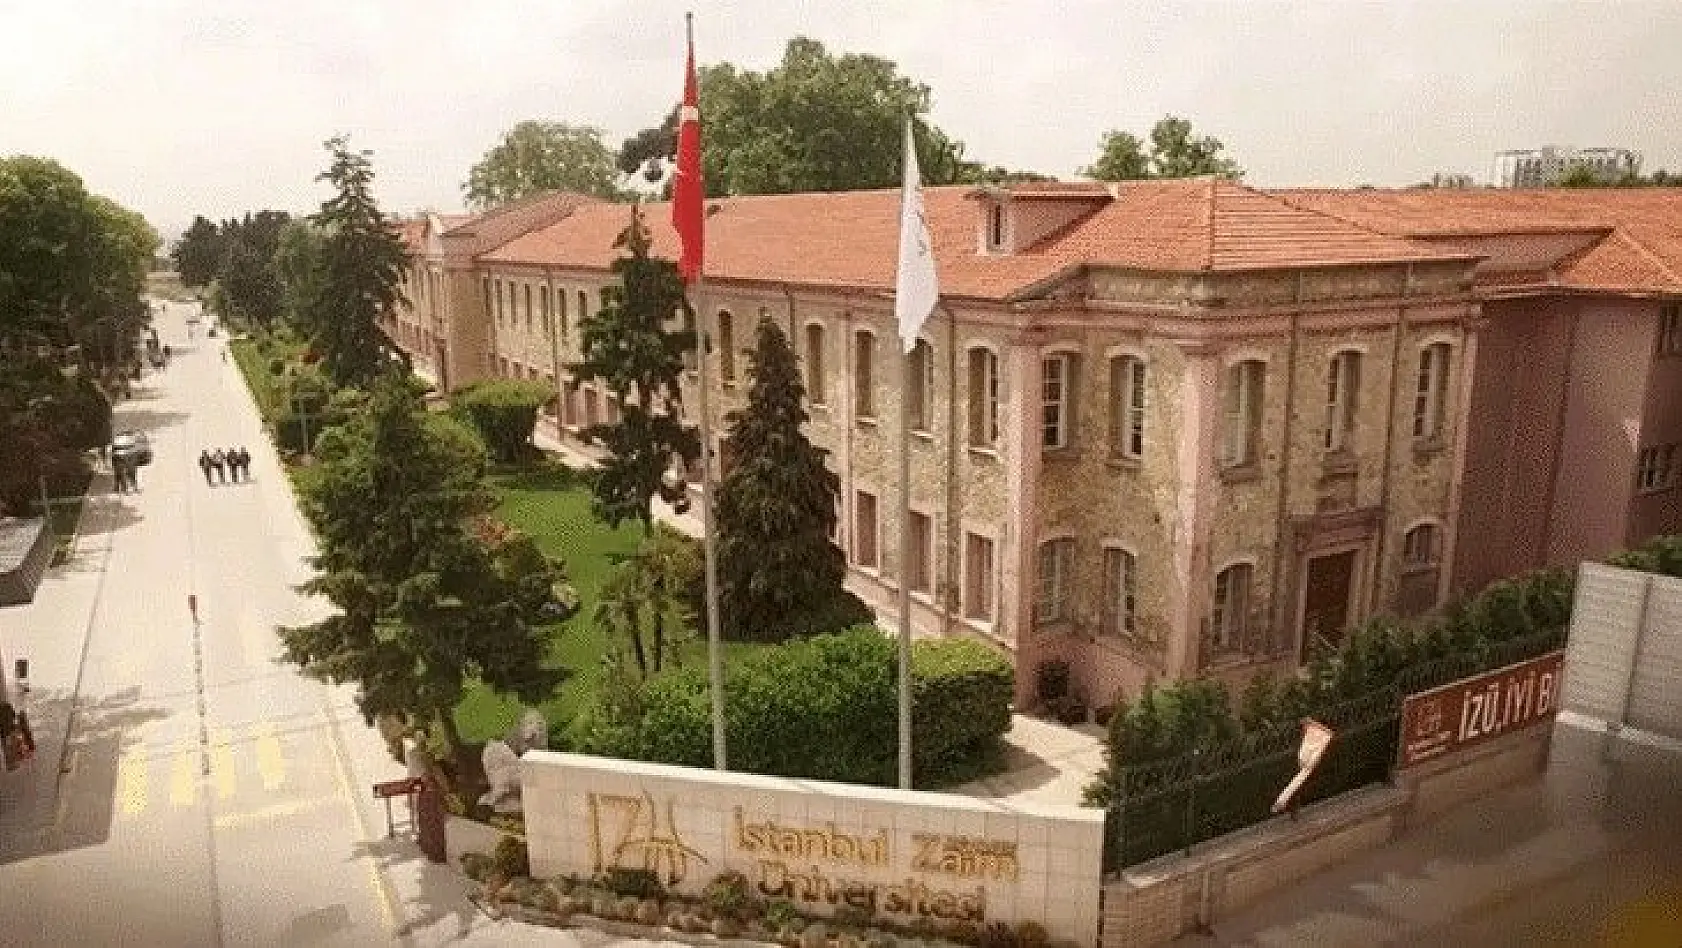 İstanbul Sabahattin Zaim Üniversitesi 27 Öğretim Üyesi alıyor